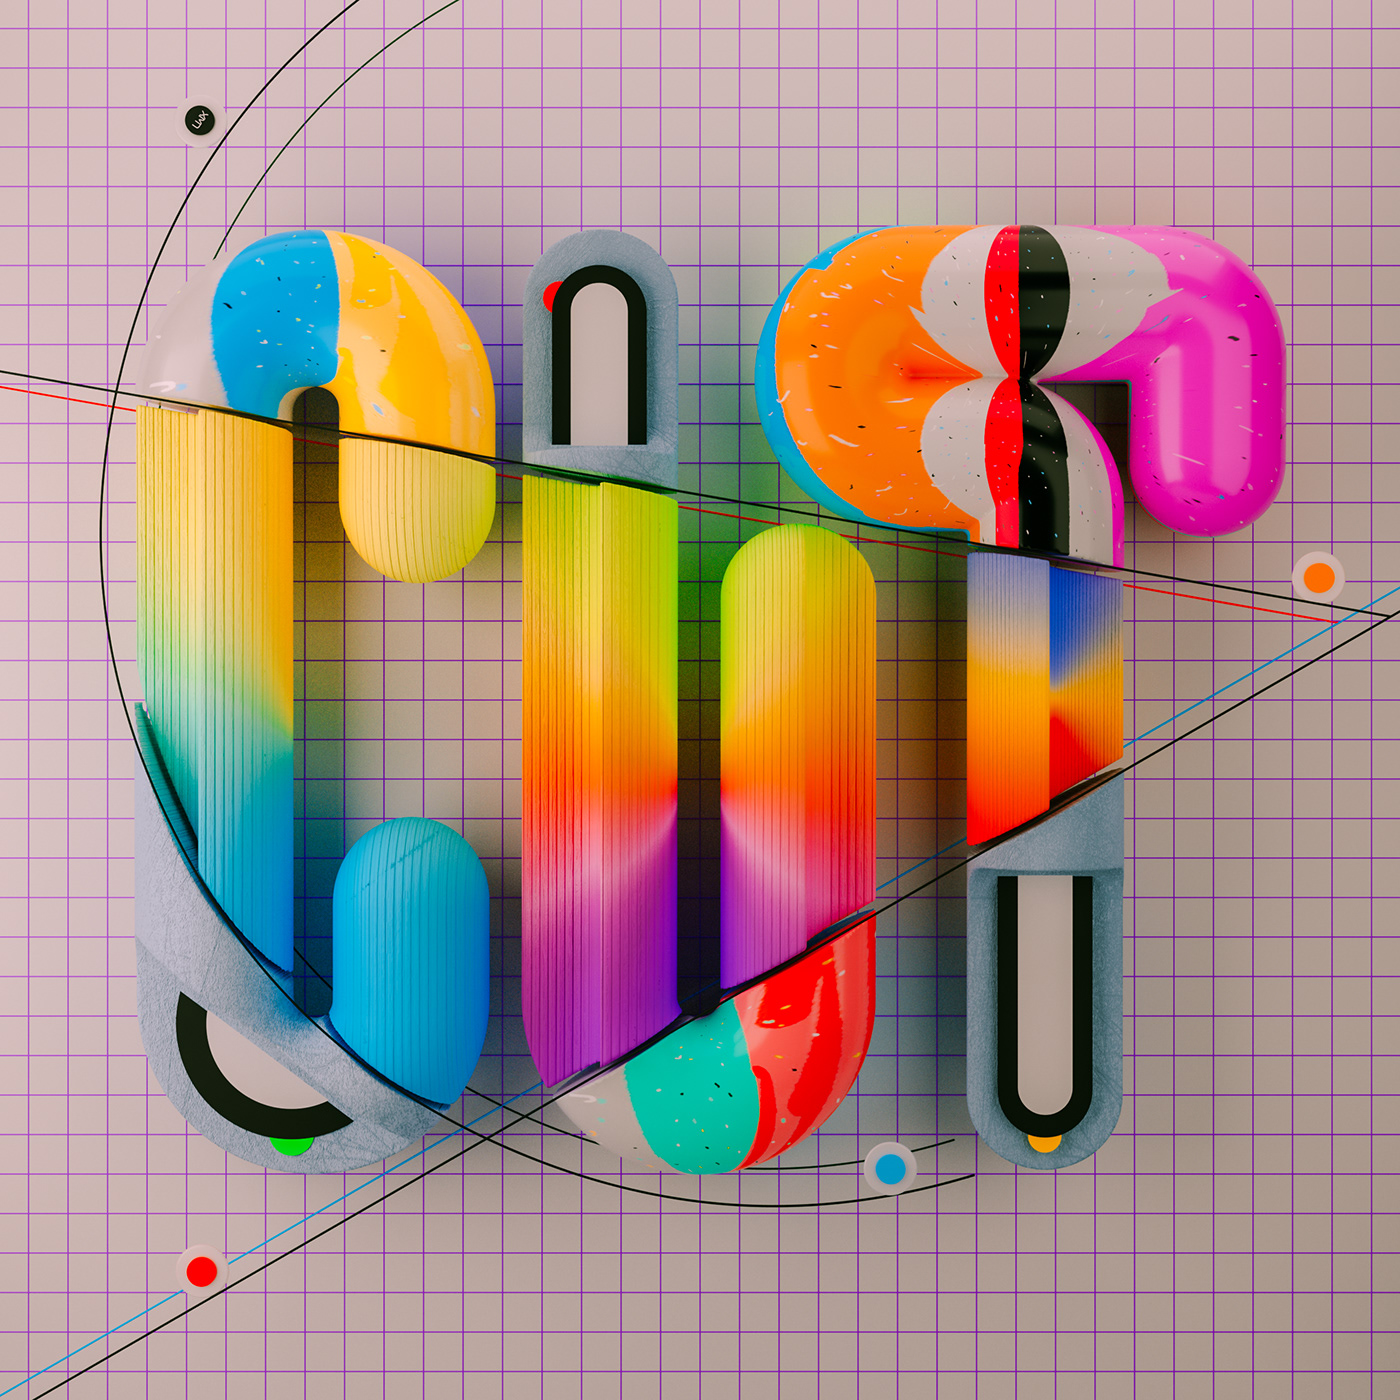 3dart 3dsculpture 3DType colorful cut handmadetextures line art scissors typography   vector